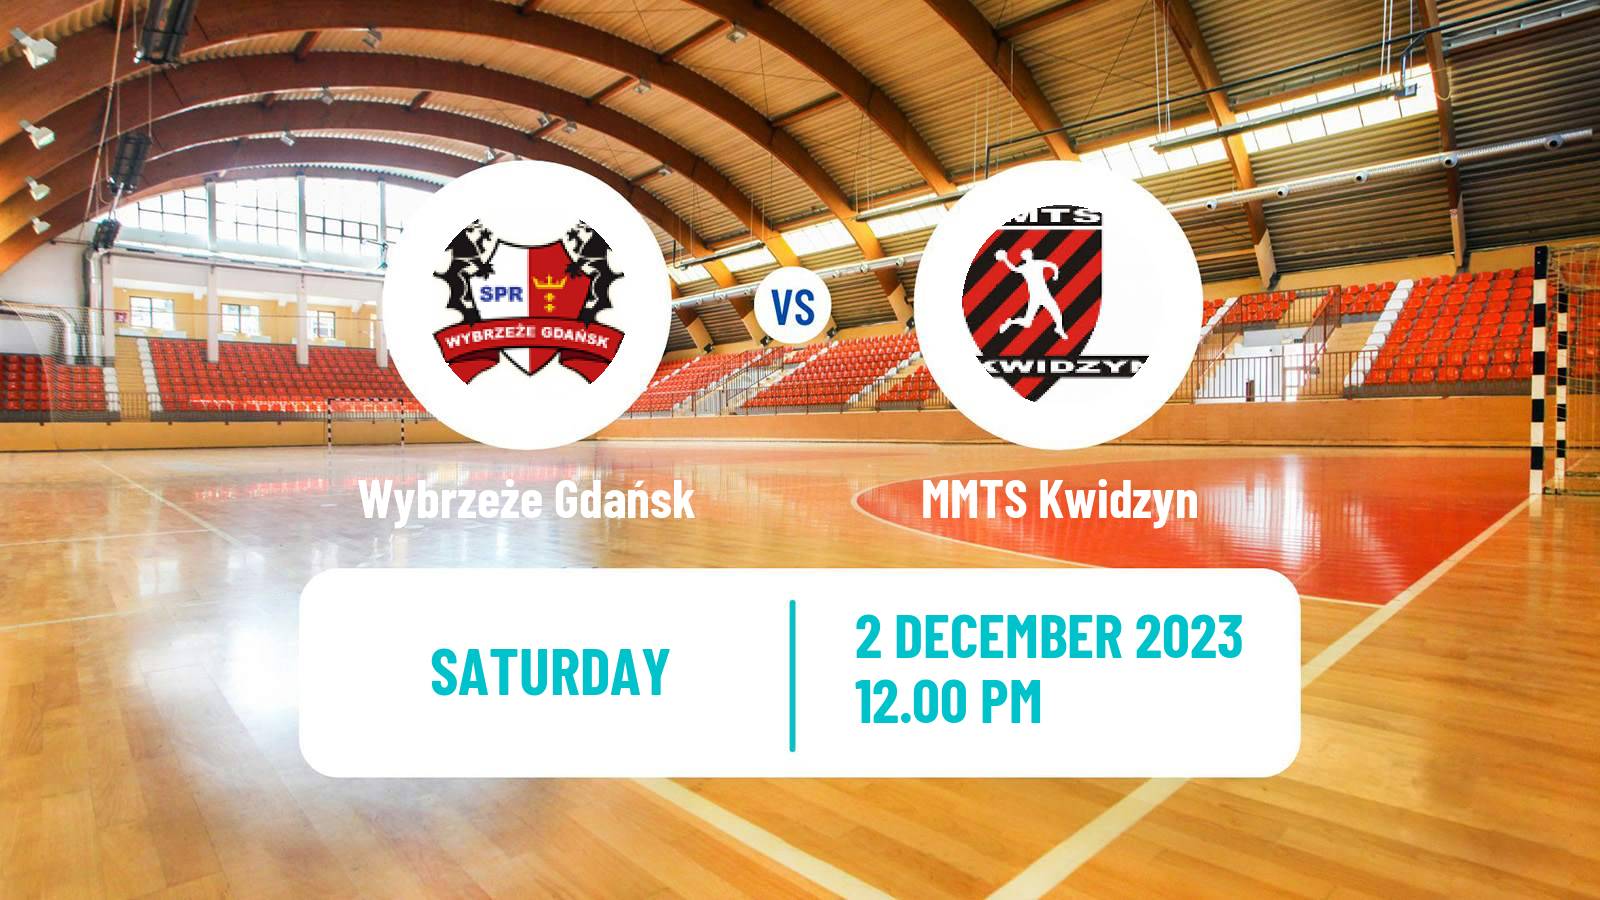 Handball Polish Superliga Handball Wybrzeże Gdańsk - MMTS Kwidzyn